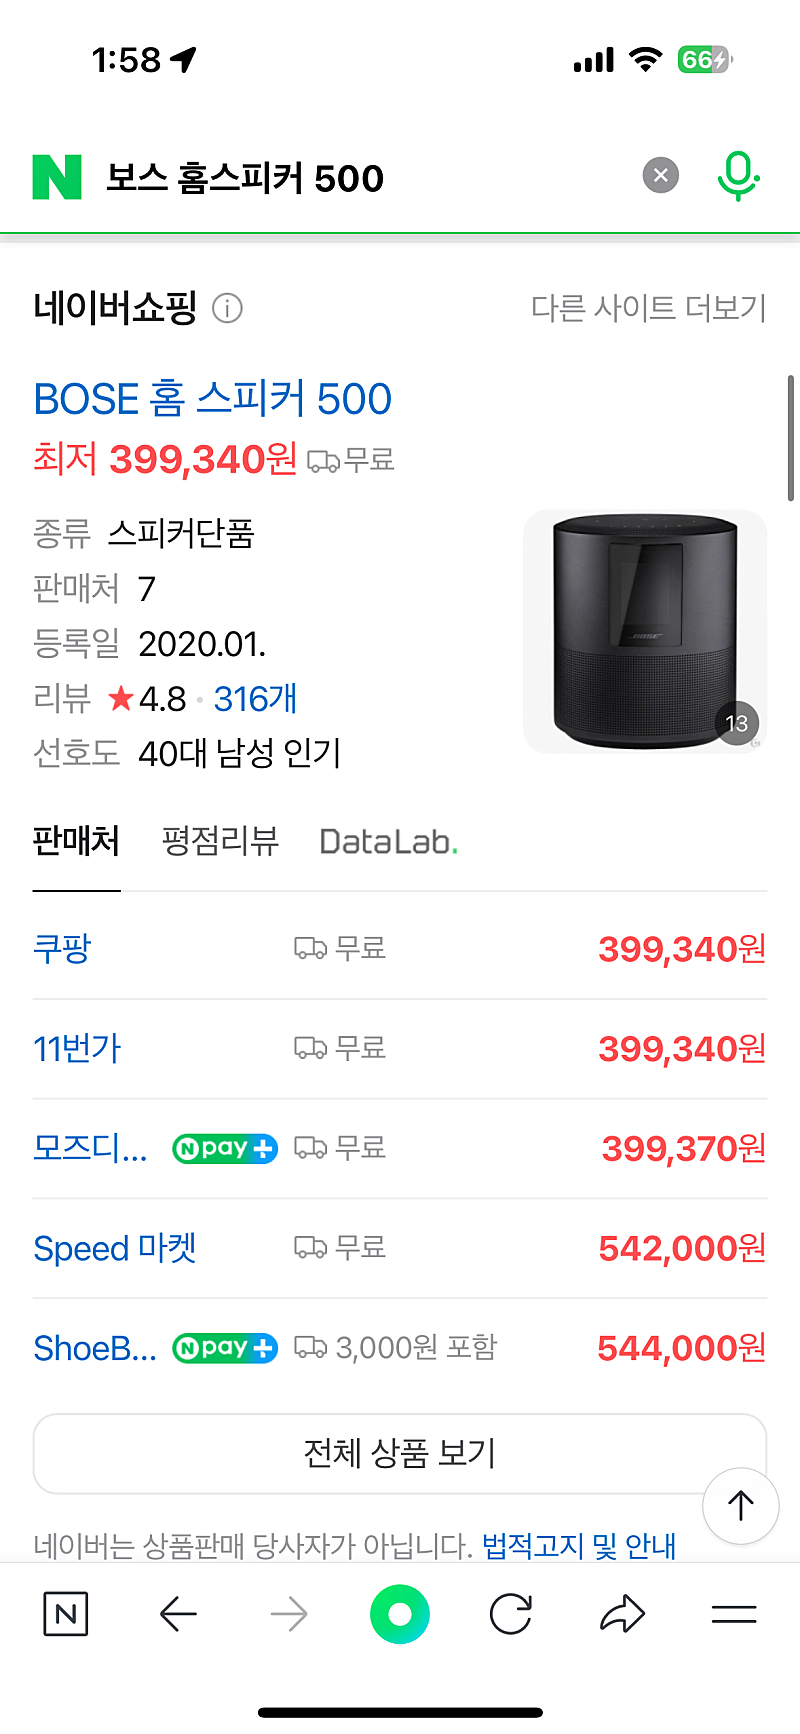 보스(BOSE) 홈스피커 500 미개봉 새상품 판매